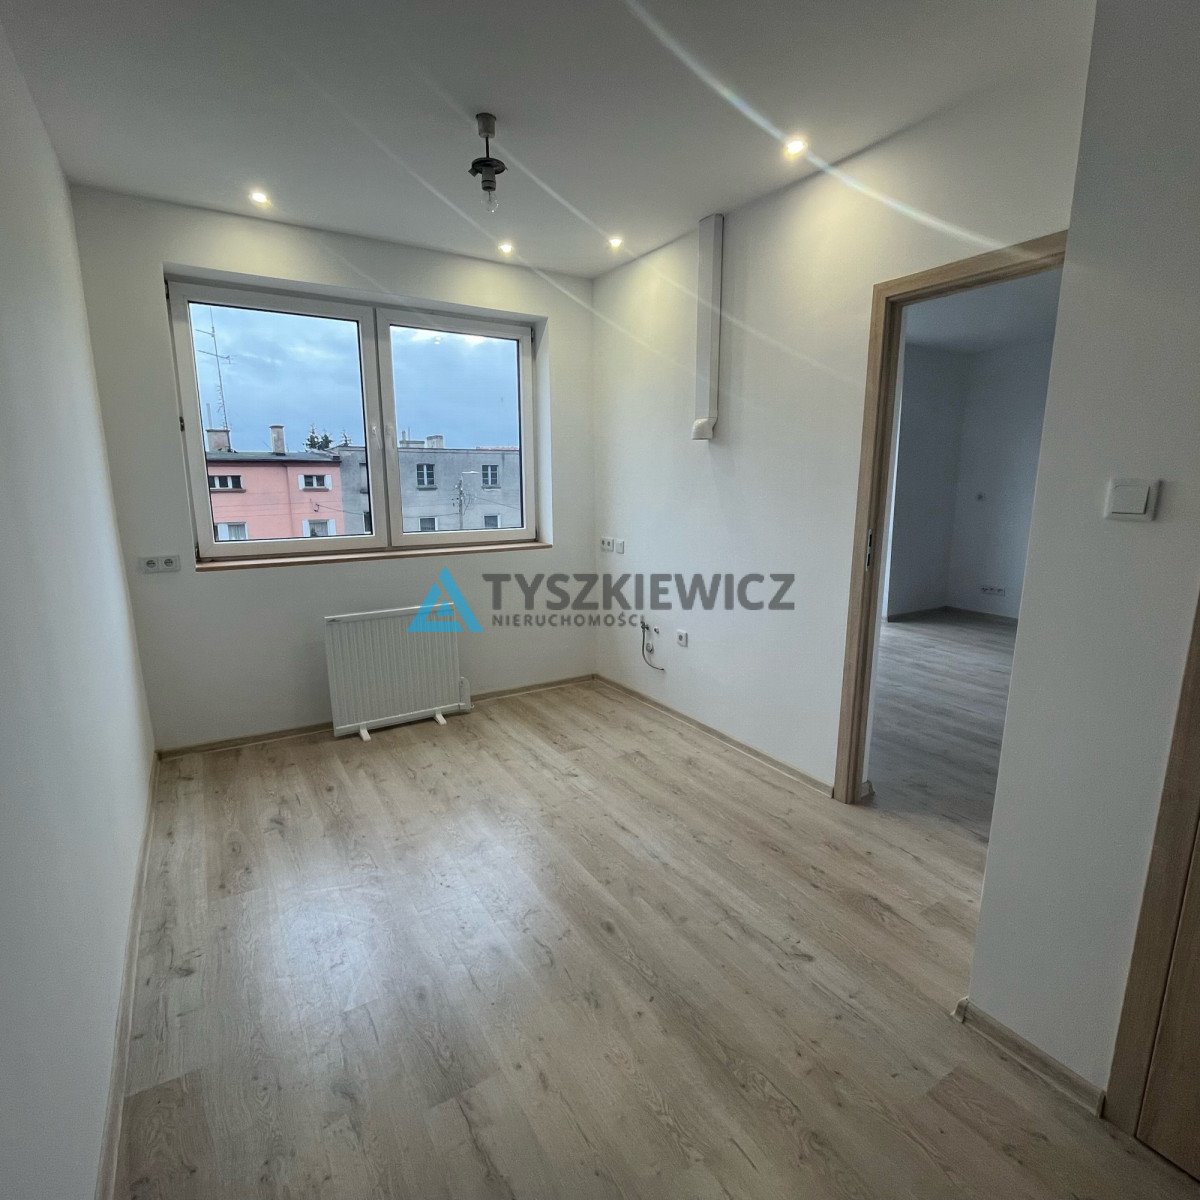 Mieszkanie dwupokojowe na sprzedaż Starogard Gdański  40m2 Foto 2